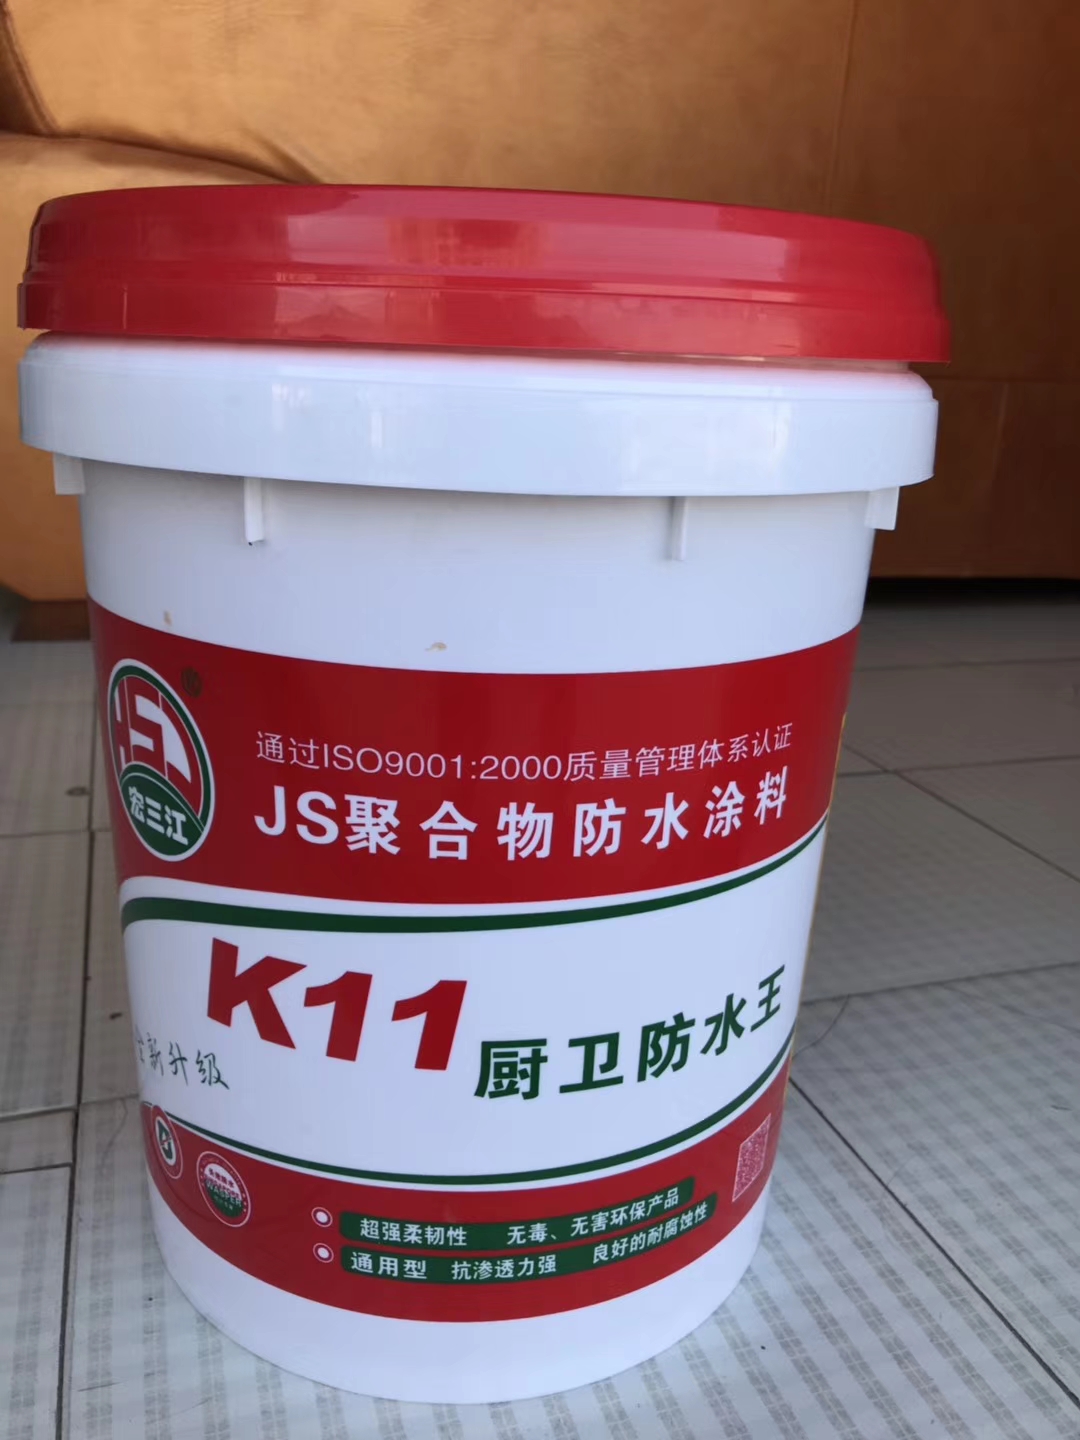 宏三江jg聚合物防水涂料供应商_厂家批发价格图片